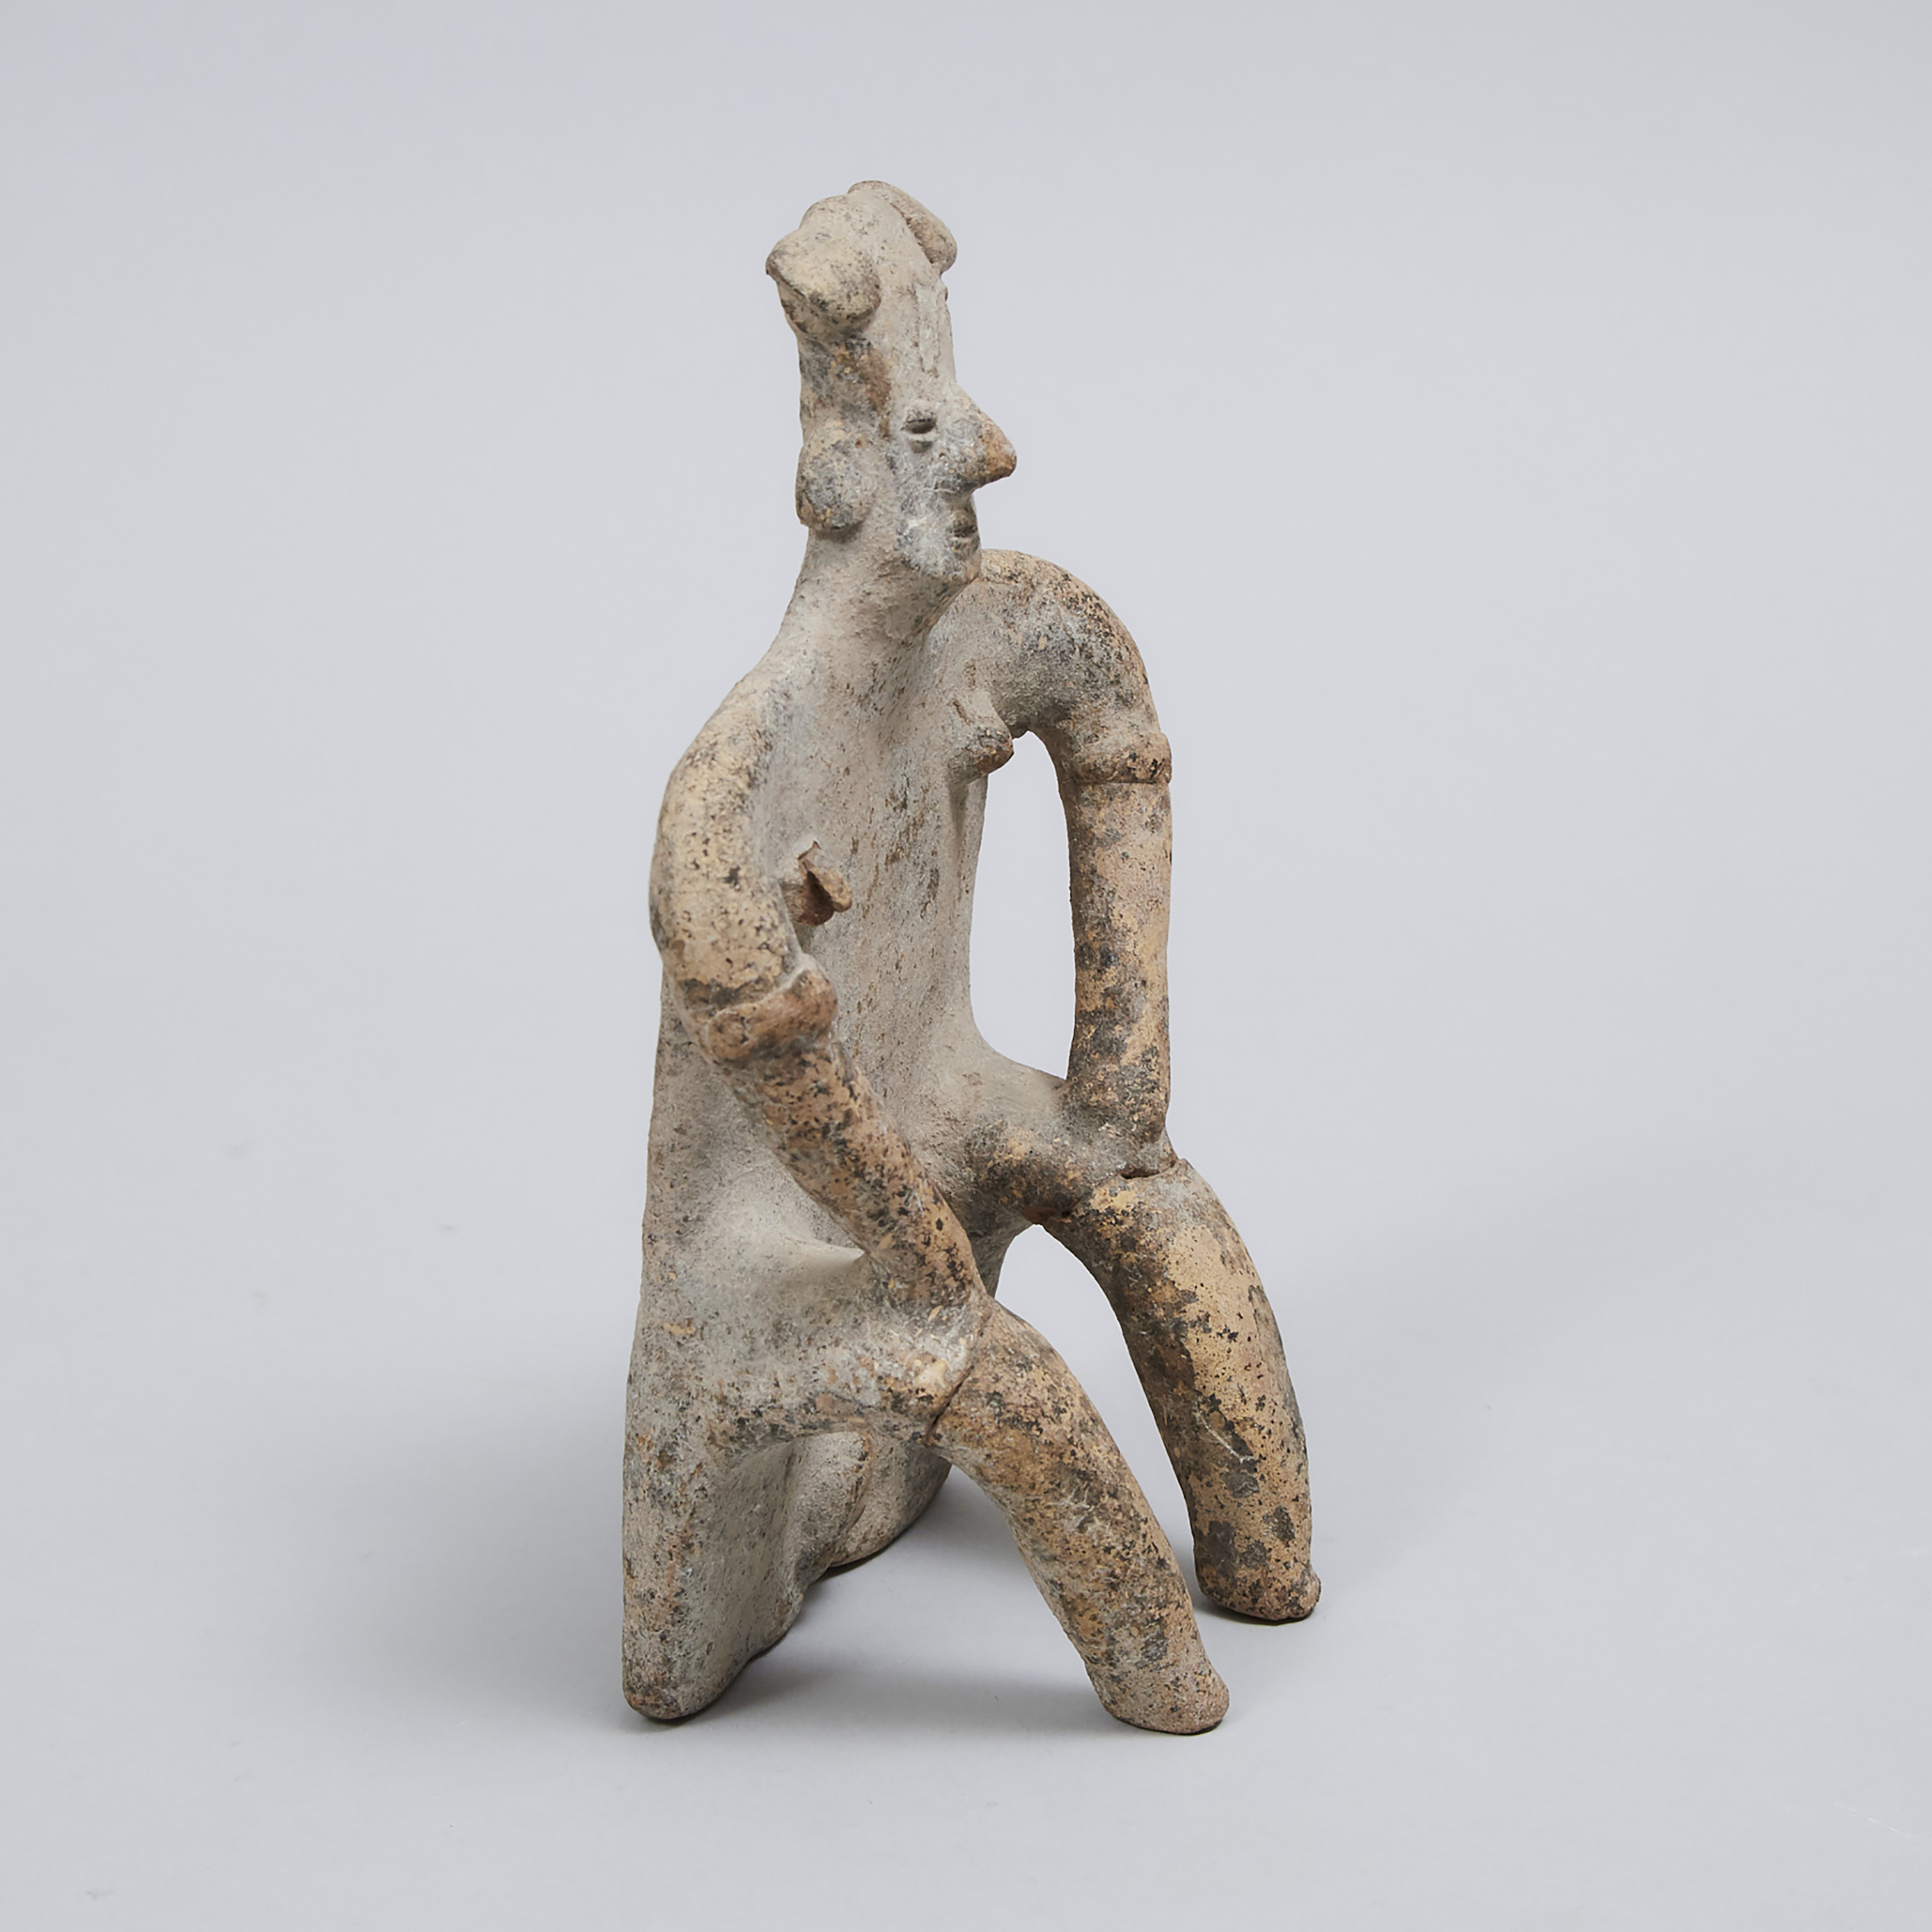 Jalisco/Colima Pottery Fertility Figure, West Mexico, 200 B.C. - 200 A.D.